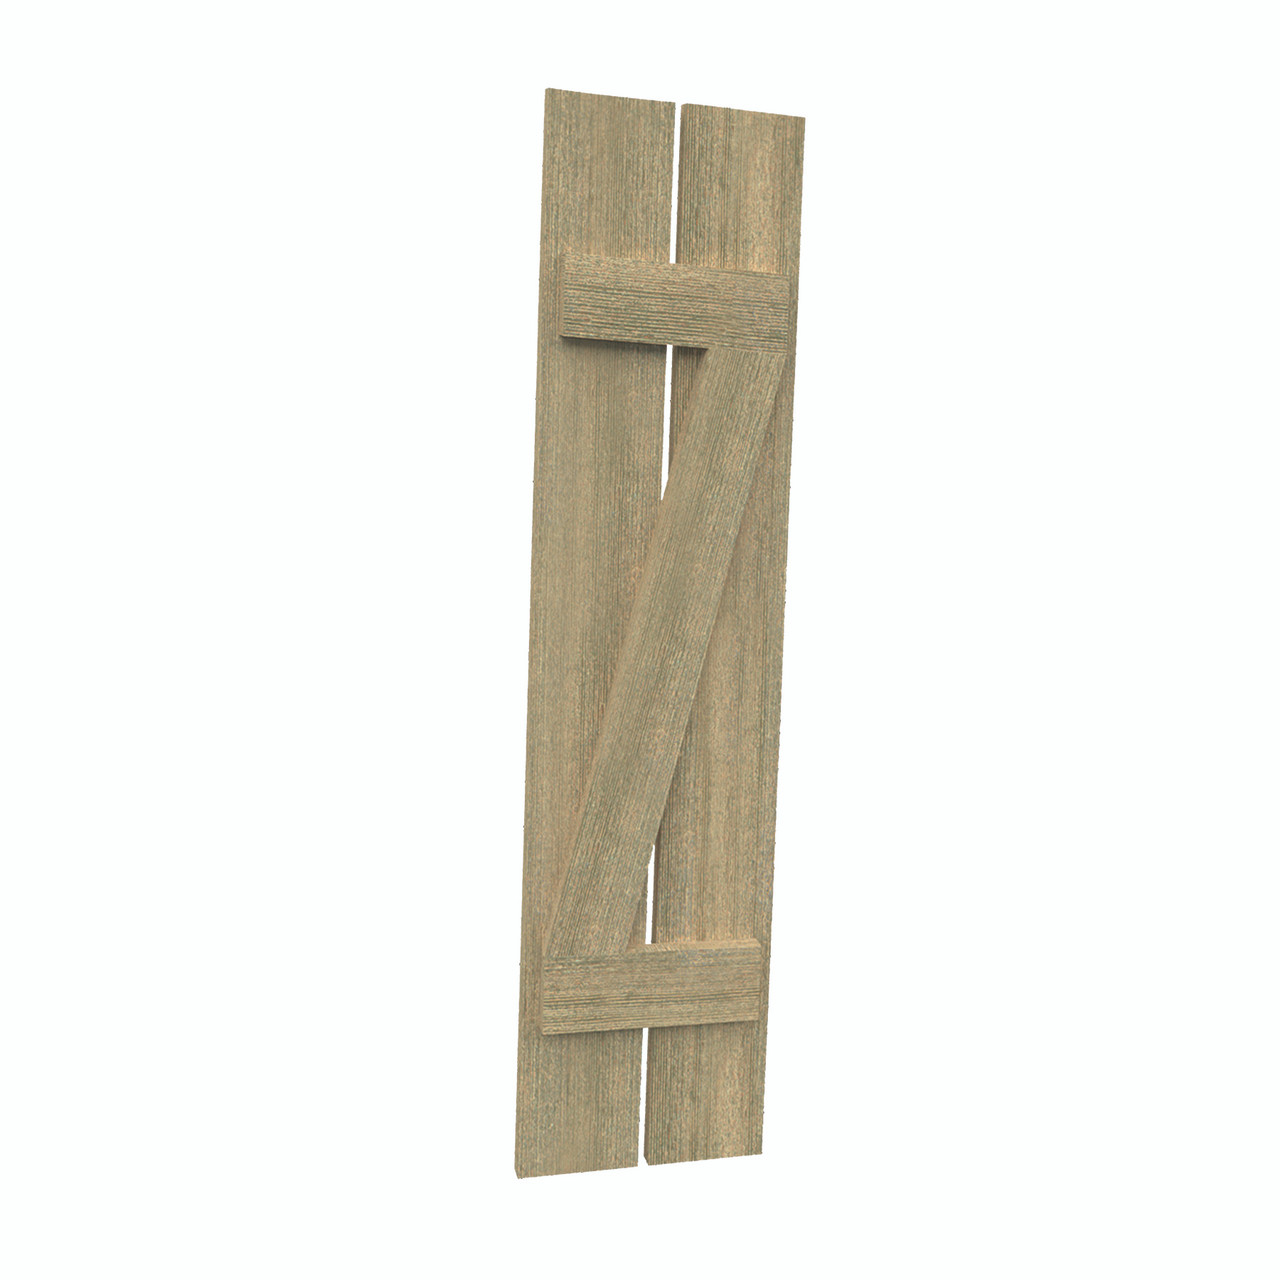 12 inch by 49 inch Plank Shutter with 2-Plank, Z-Batten